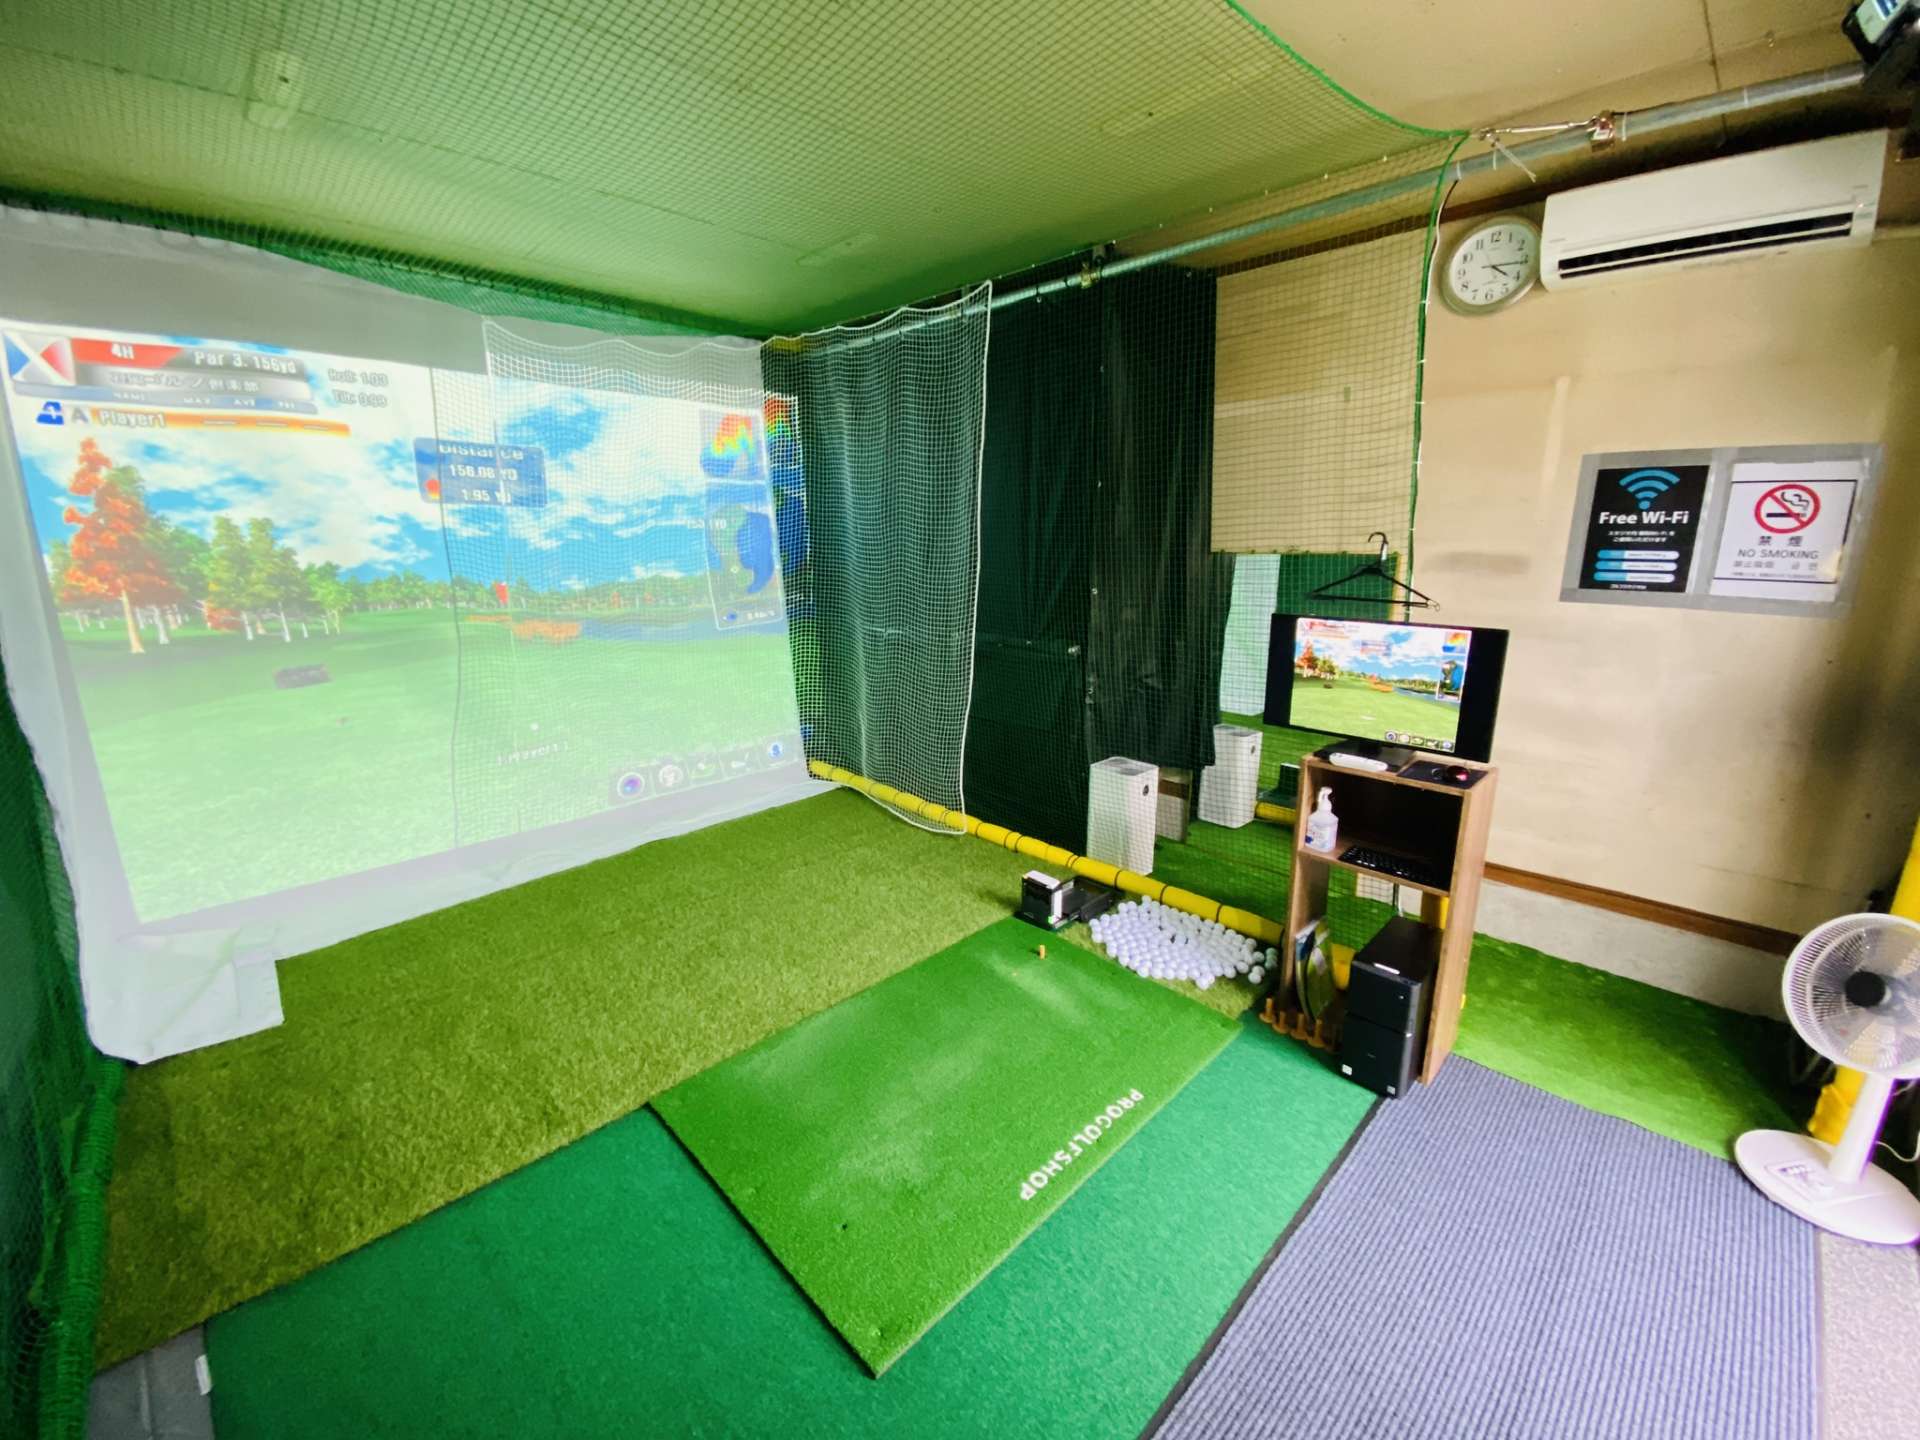 葛飾区でシミュレーションゴルフができるゴルフ練習場と言えばゴルフスタジオM